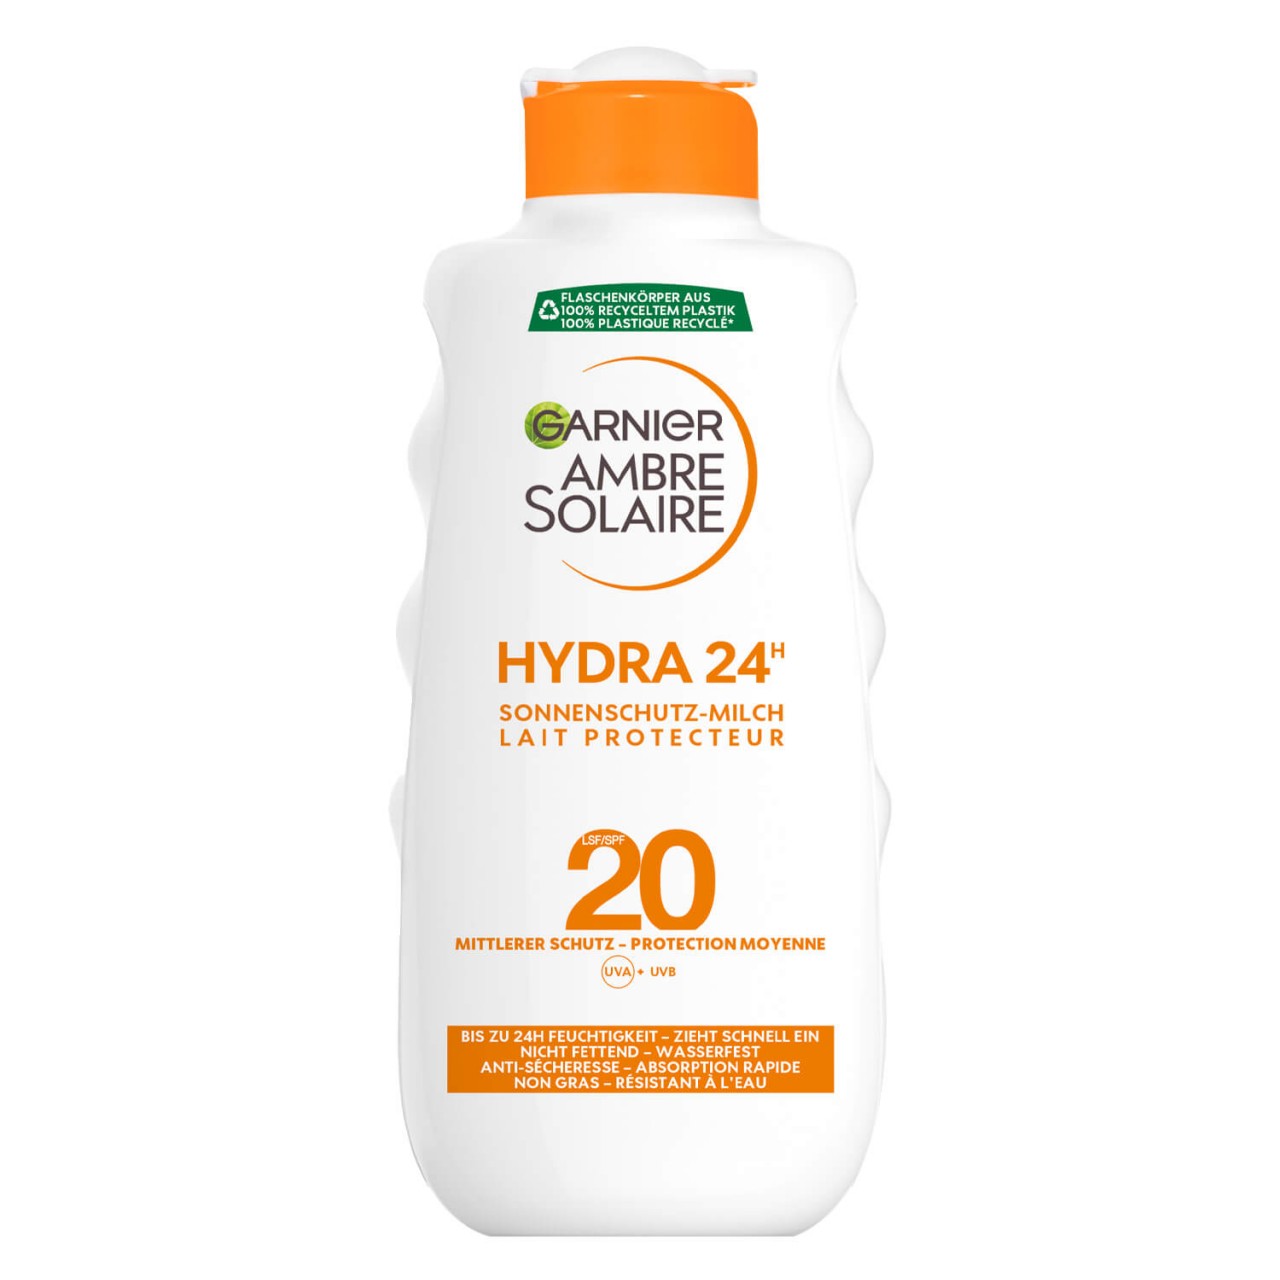 Ambre Solaire - Sonnenschutz-Milch LSF20 Hydra 24h von GARNIER